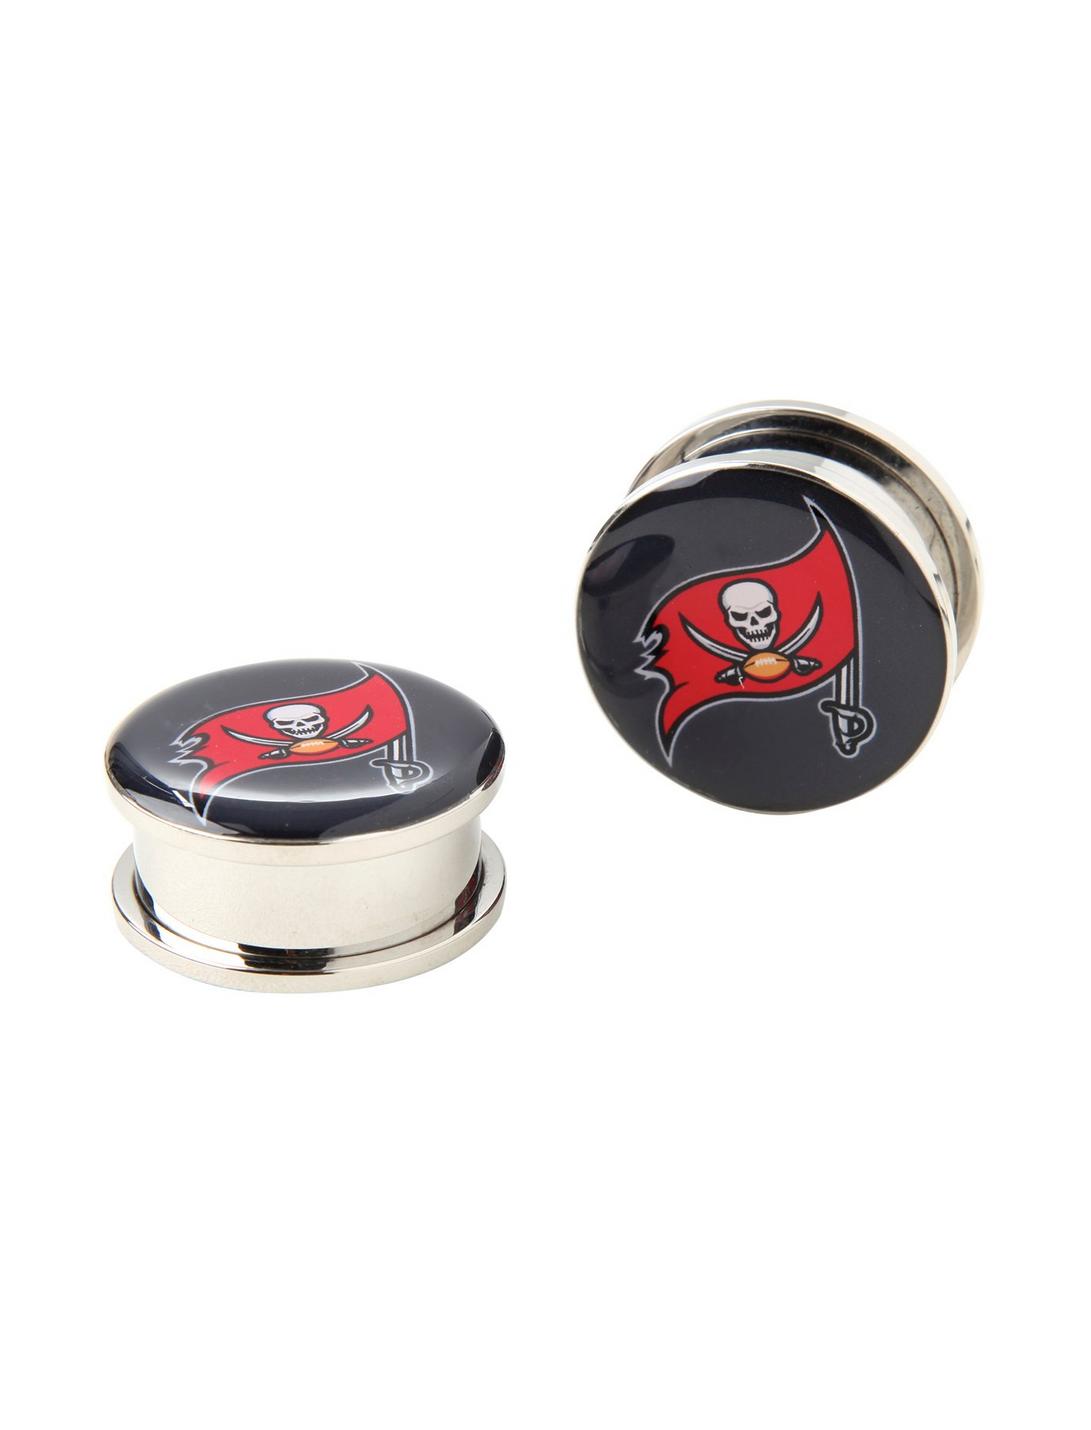 NFL Tampa Bay Buccaneers Steel Spool Plug 2 Pack, RED, hi-res